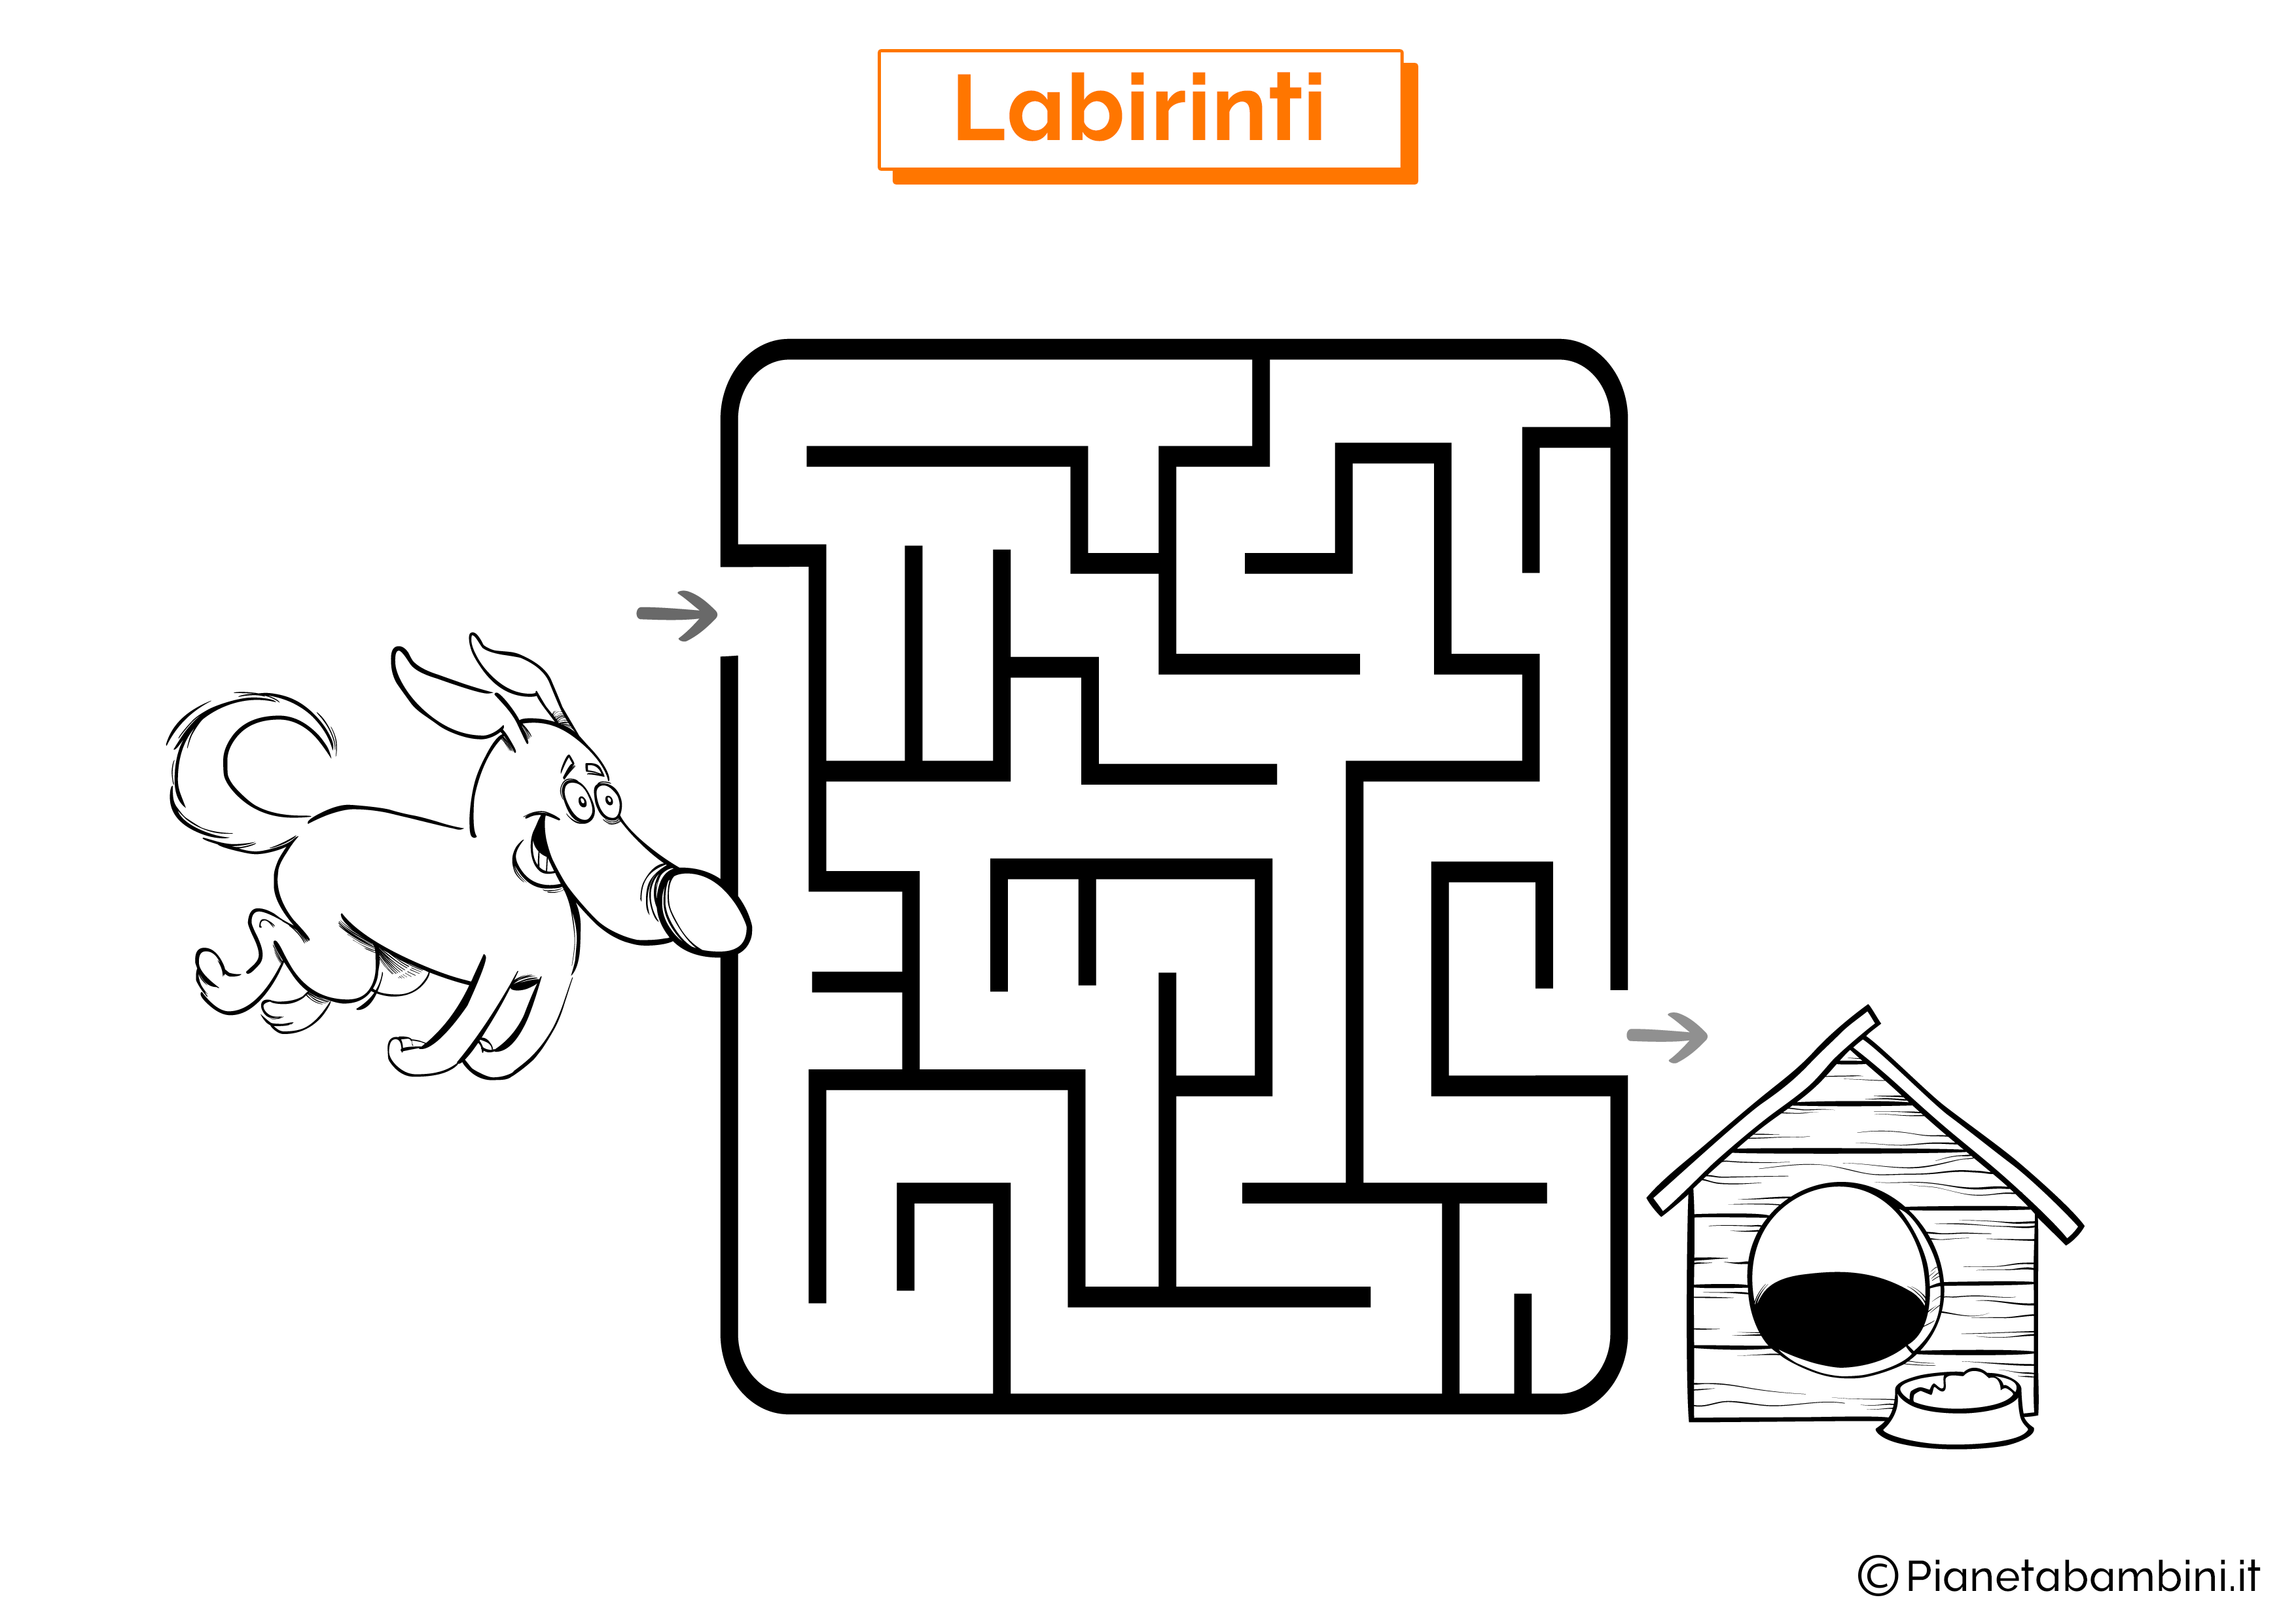 Labirinto con cane e cuccia da stampare